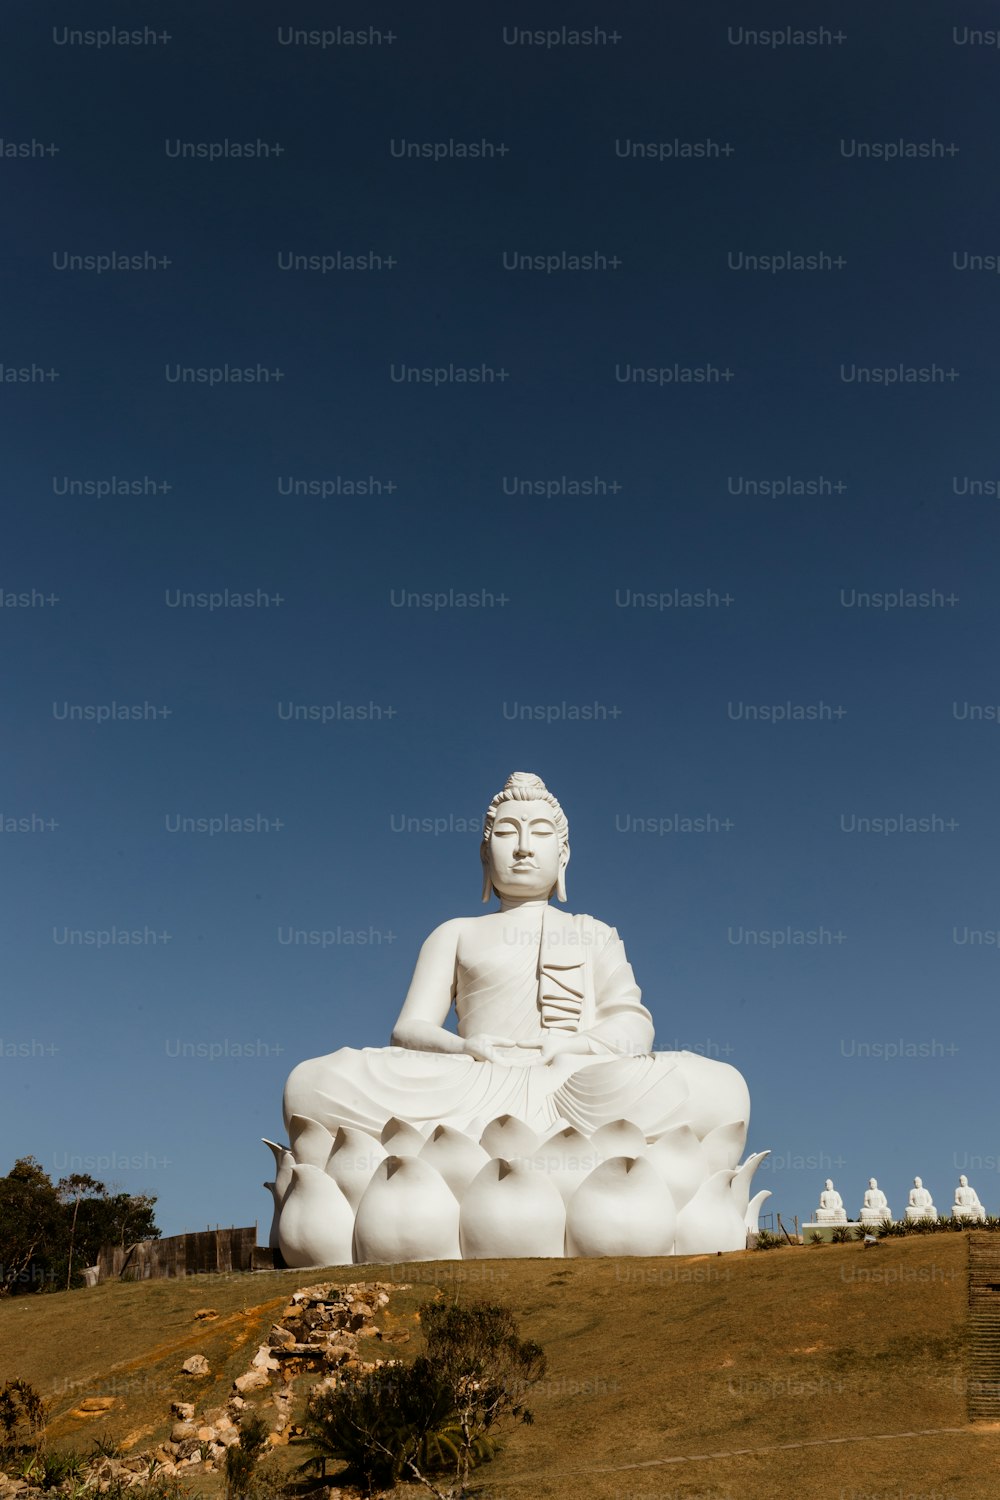 Una grande statua di Buddha bianco seduta sulla cima di una collina